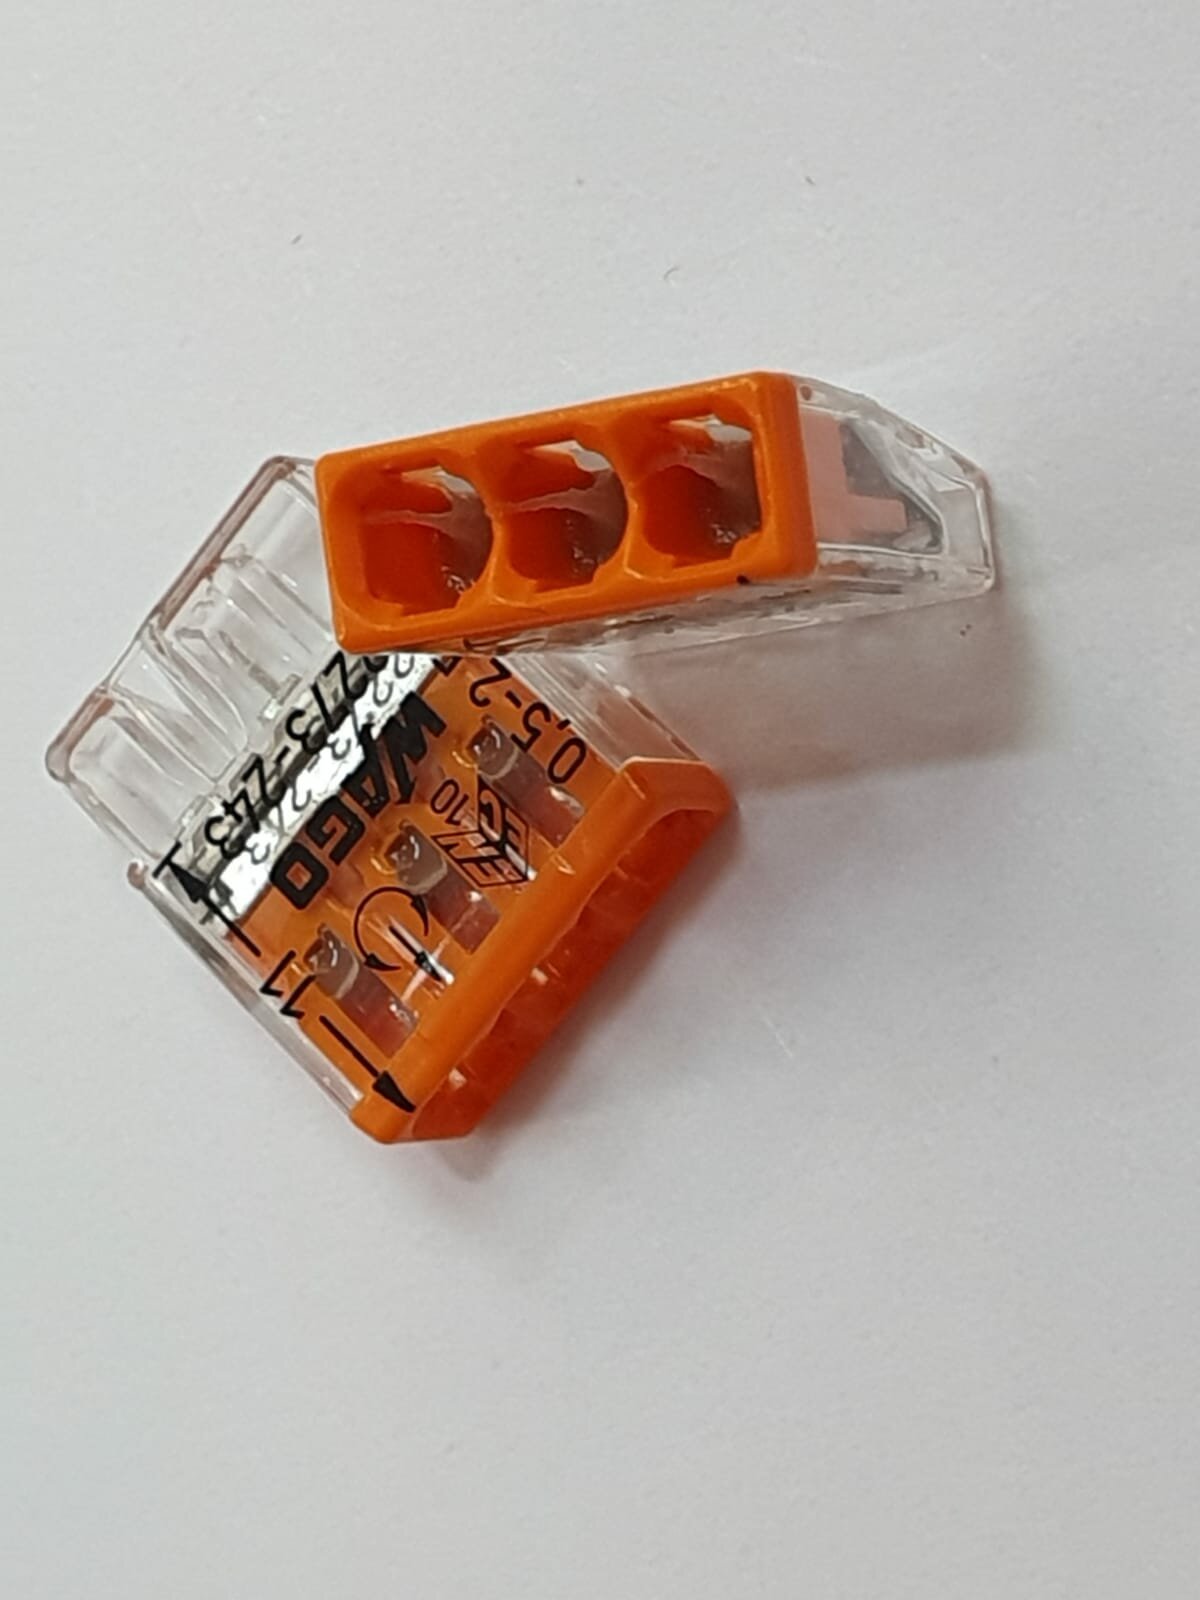 Wago CU клеммы для одножильных проводников; макс. 6 мм²; 3-проводн; прозрачный корпус; (поштучно оригинал)